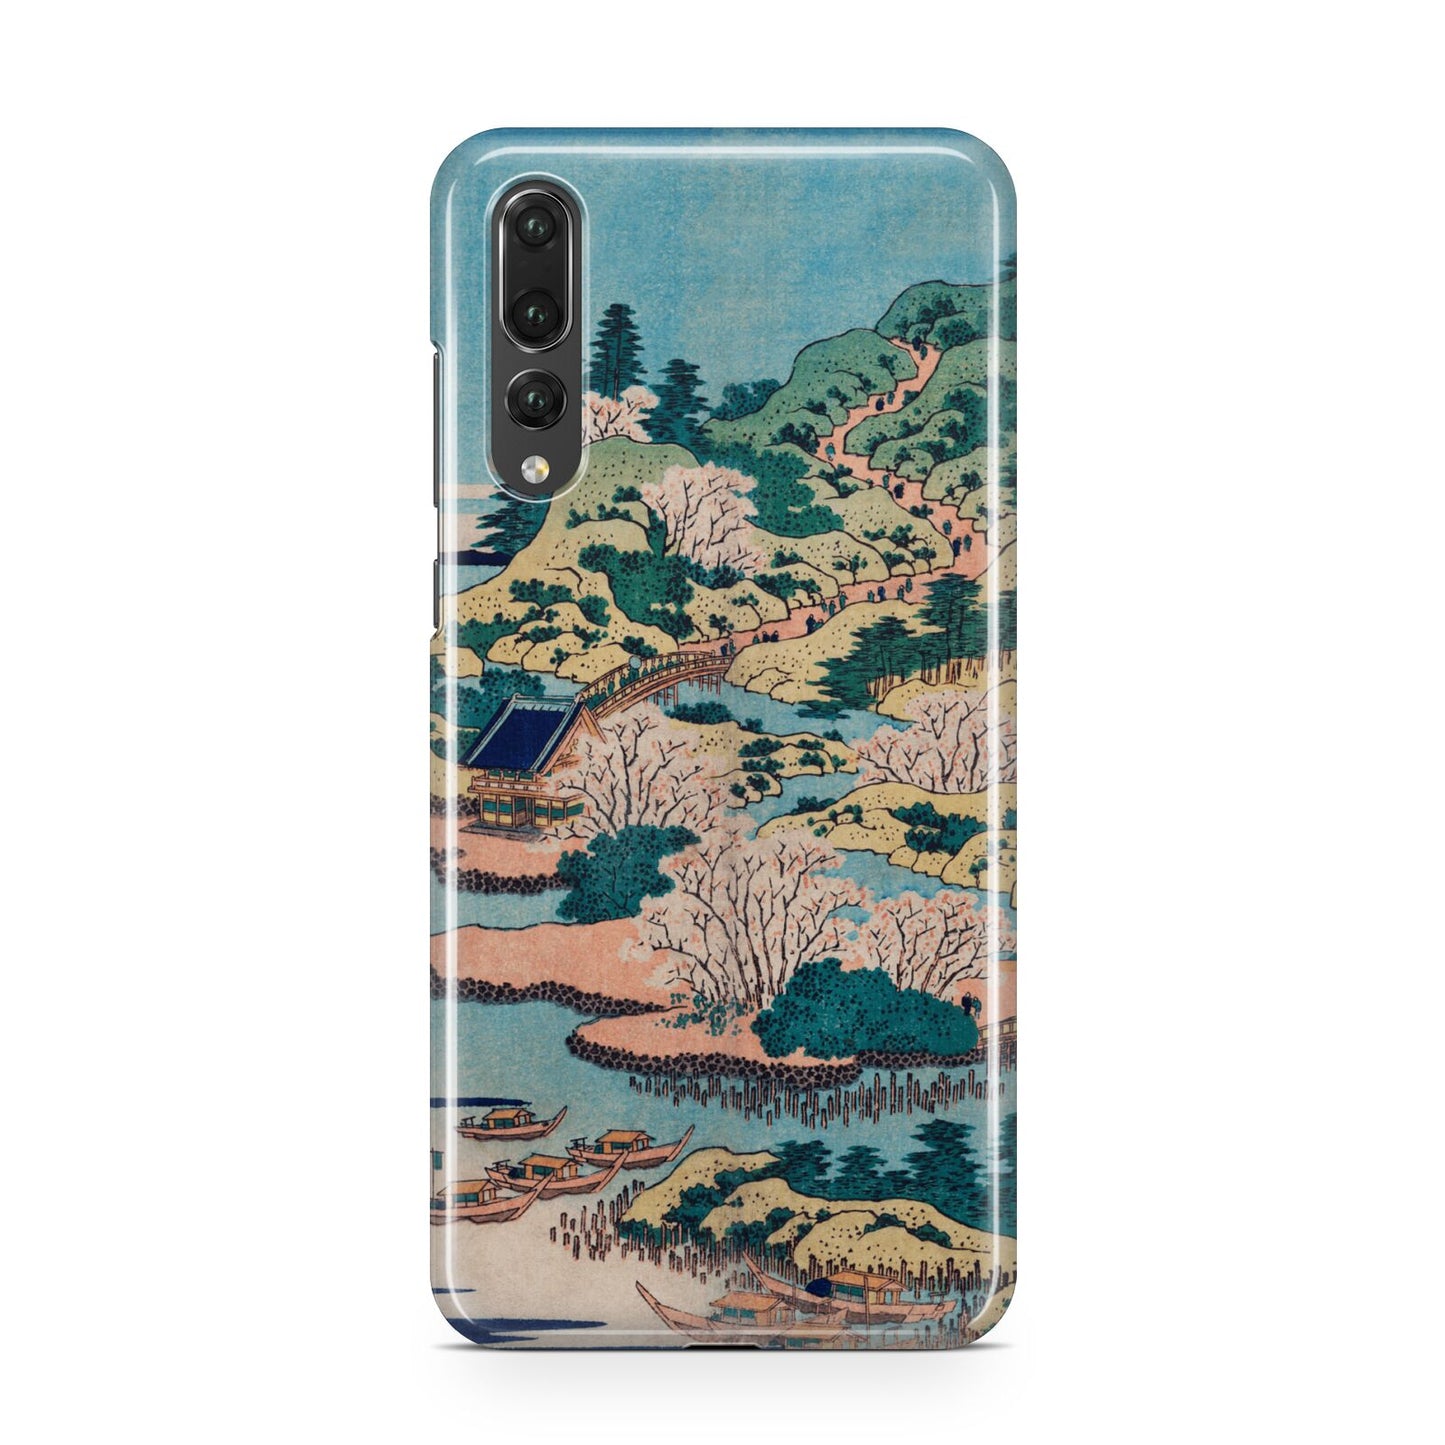 Coastal Community By Katsushika Hokusai Huawei P20 Pro Phone Case